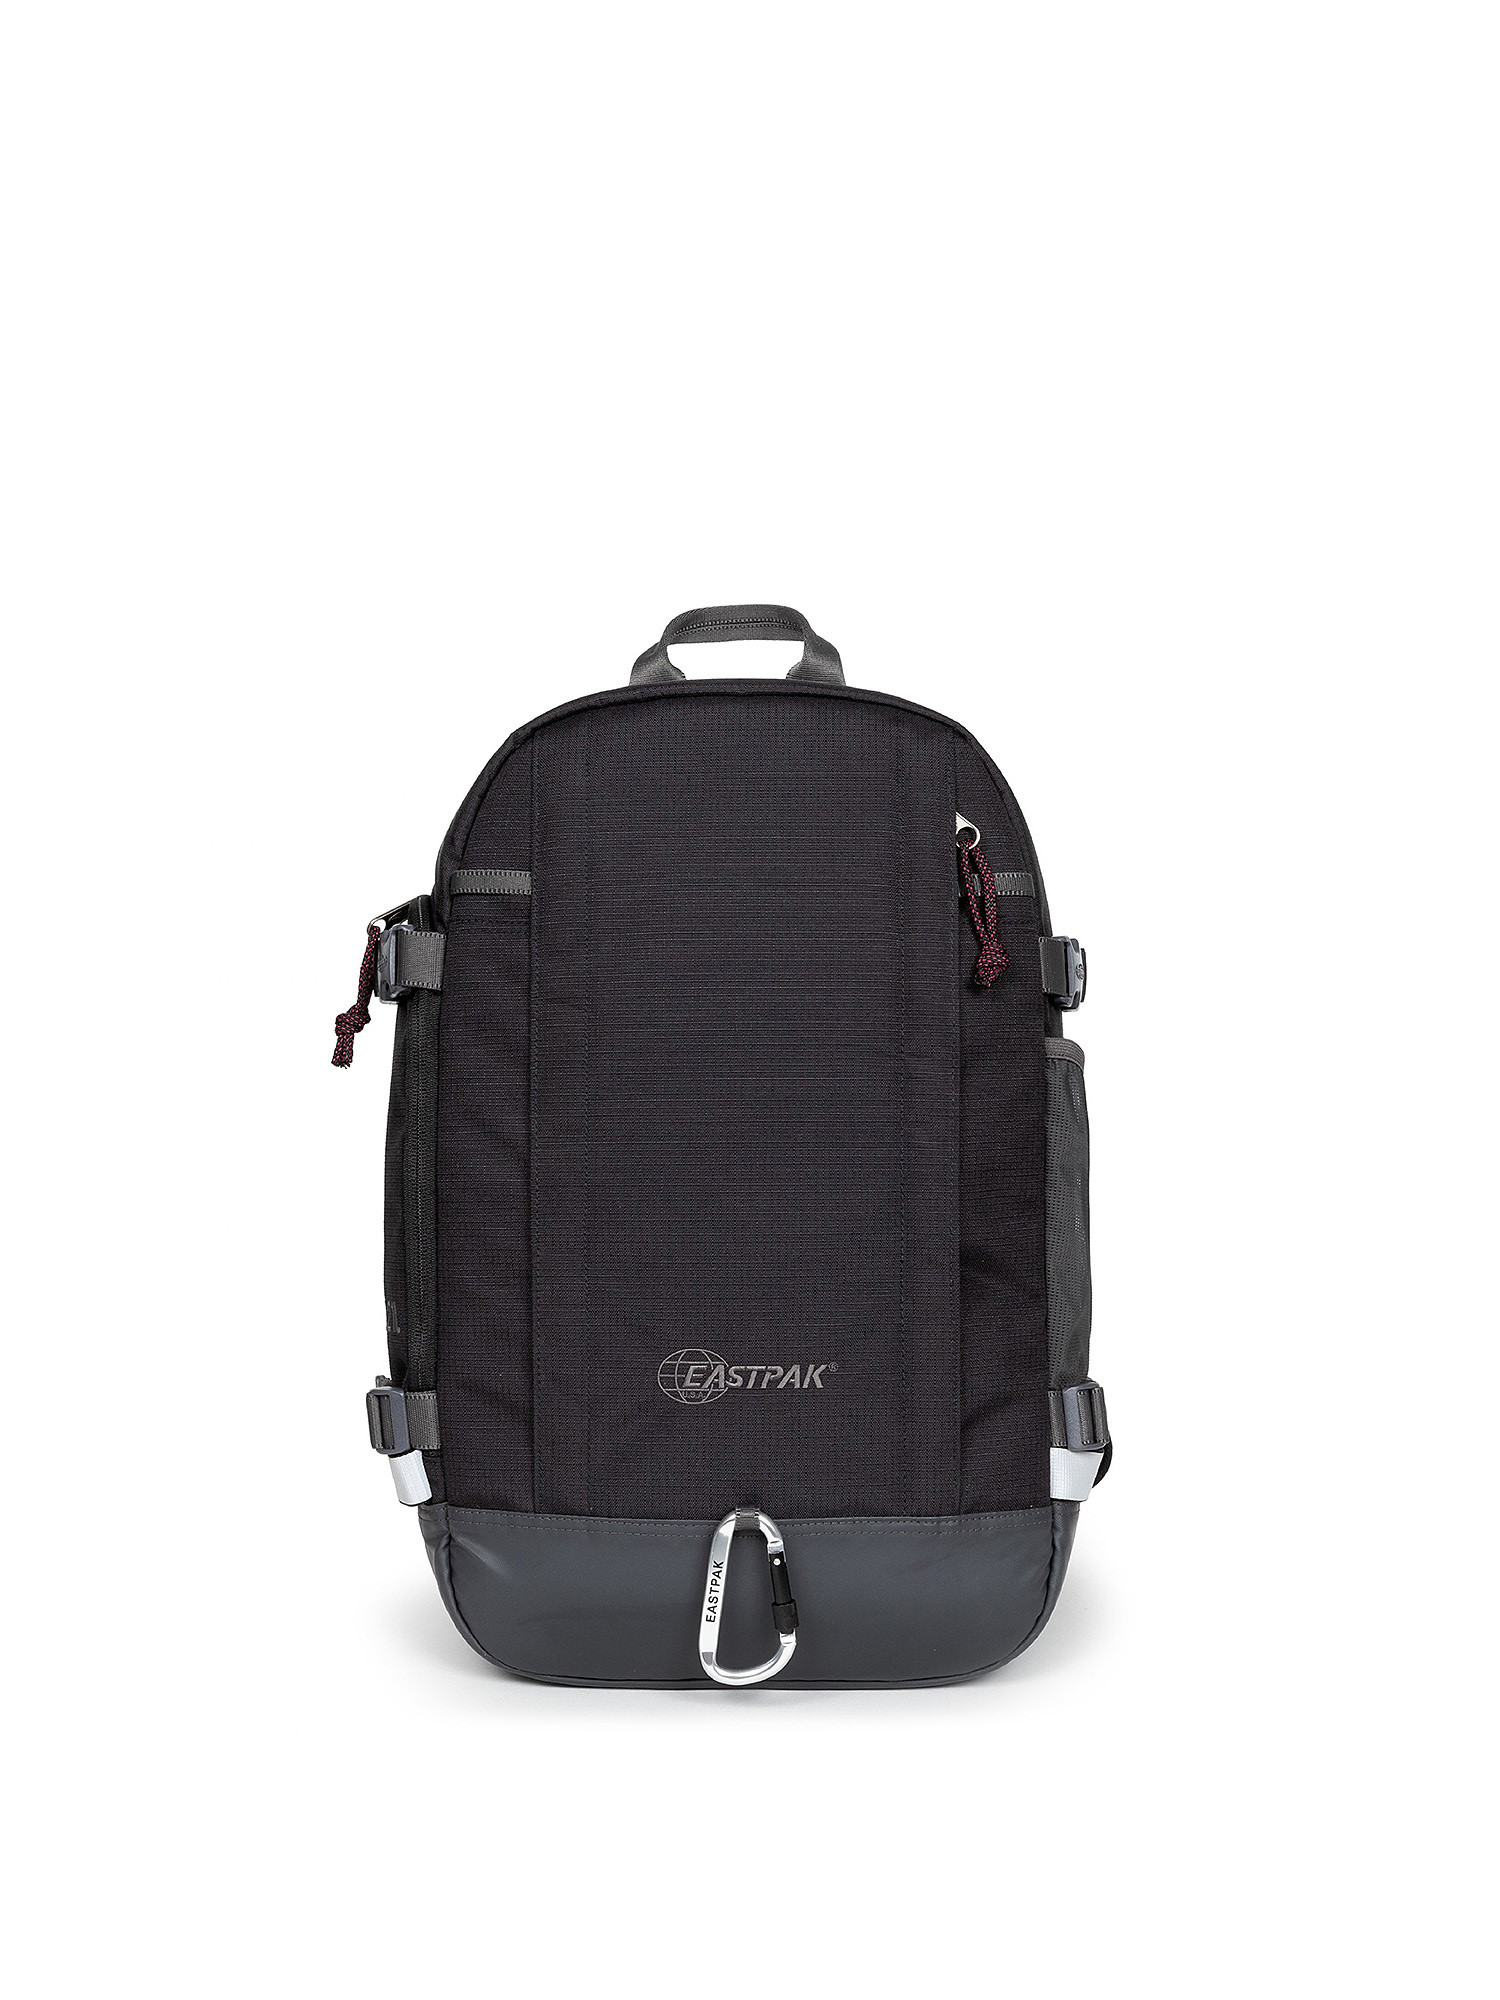 Eastpak - Out Safepack Out Black backpack, Black, large image number 0